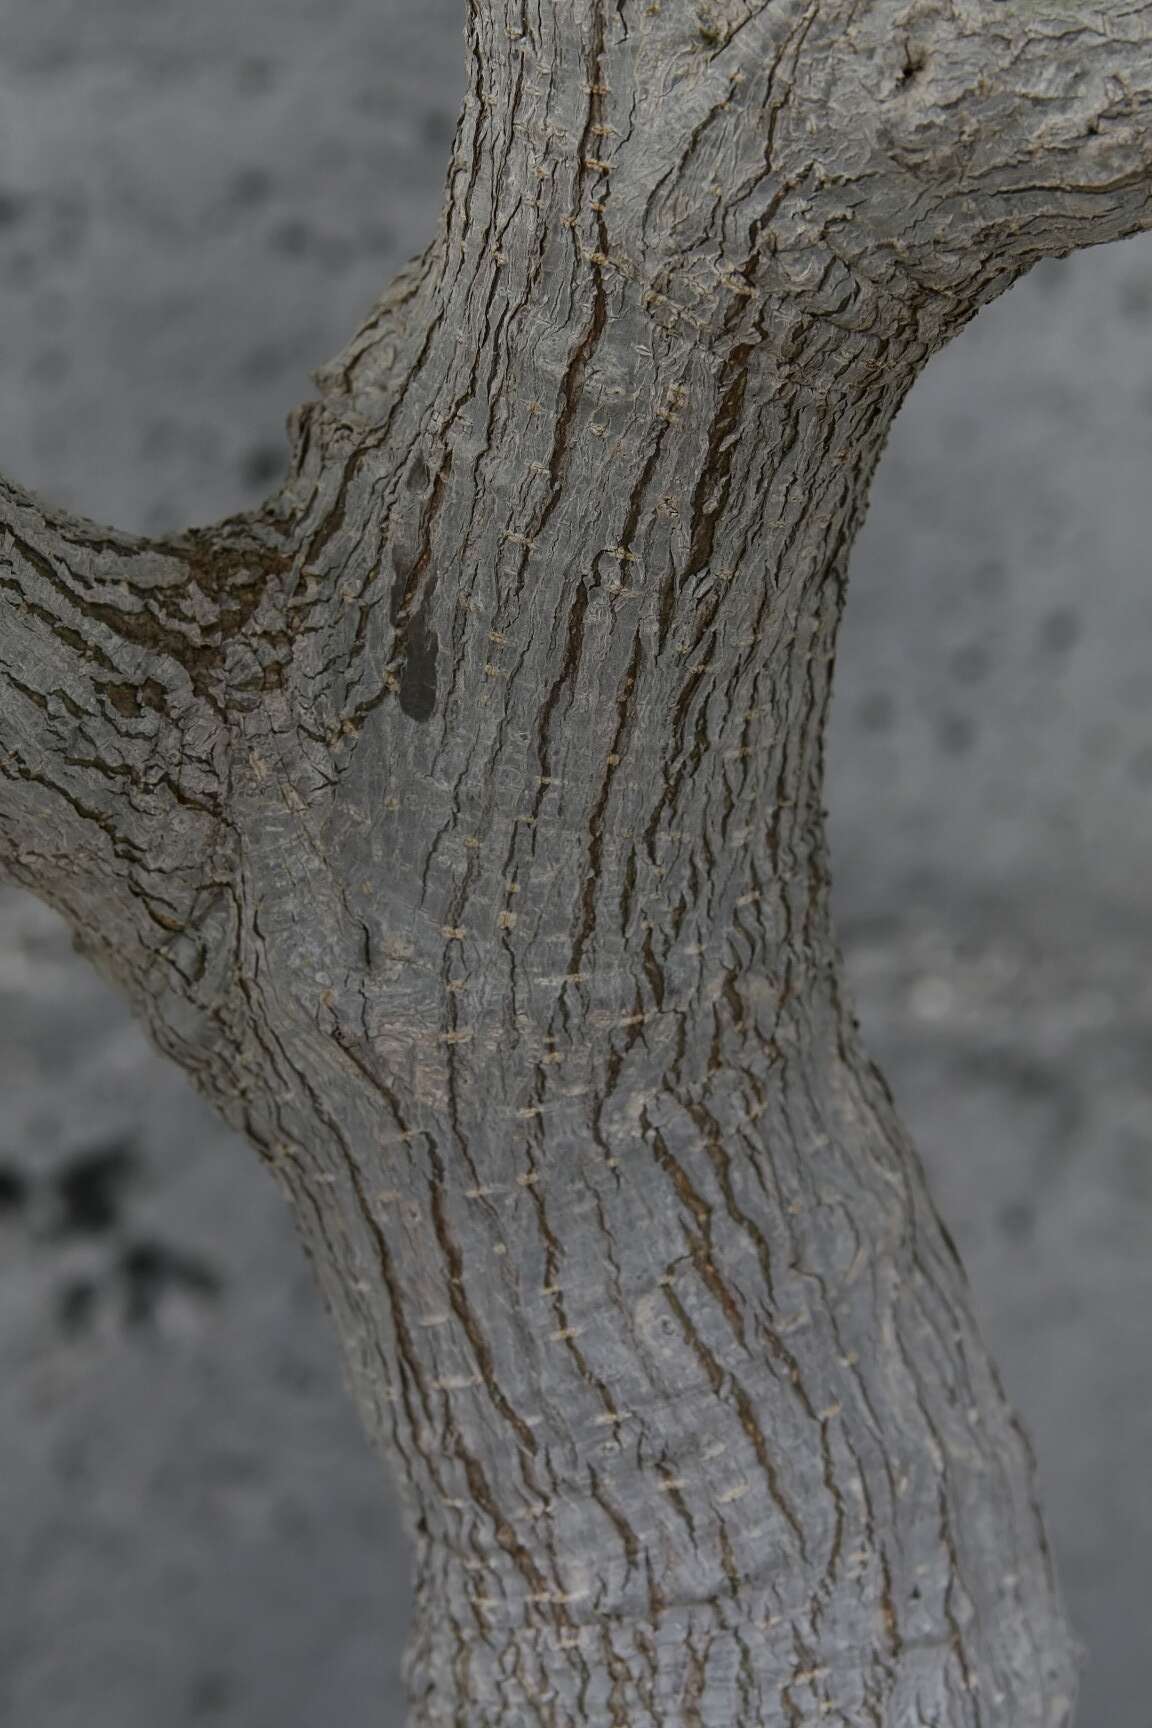 Image de Ficus neriifolia Smith